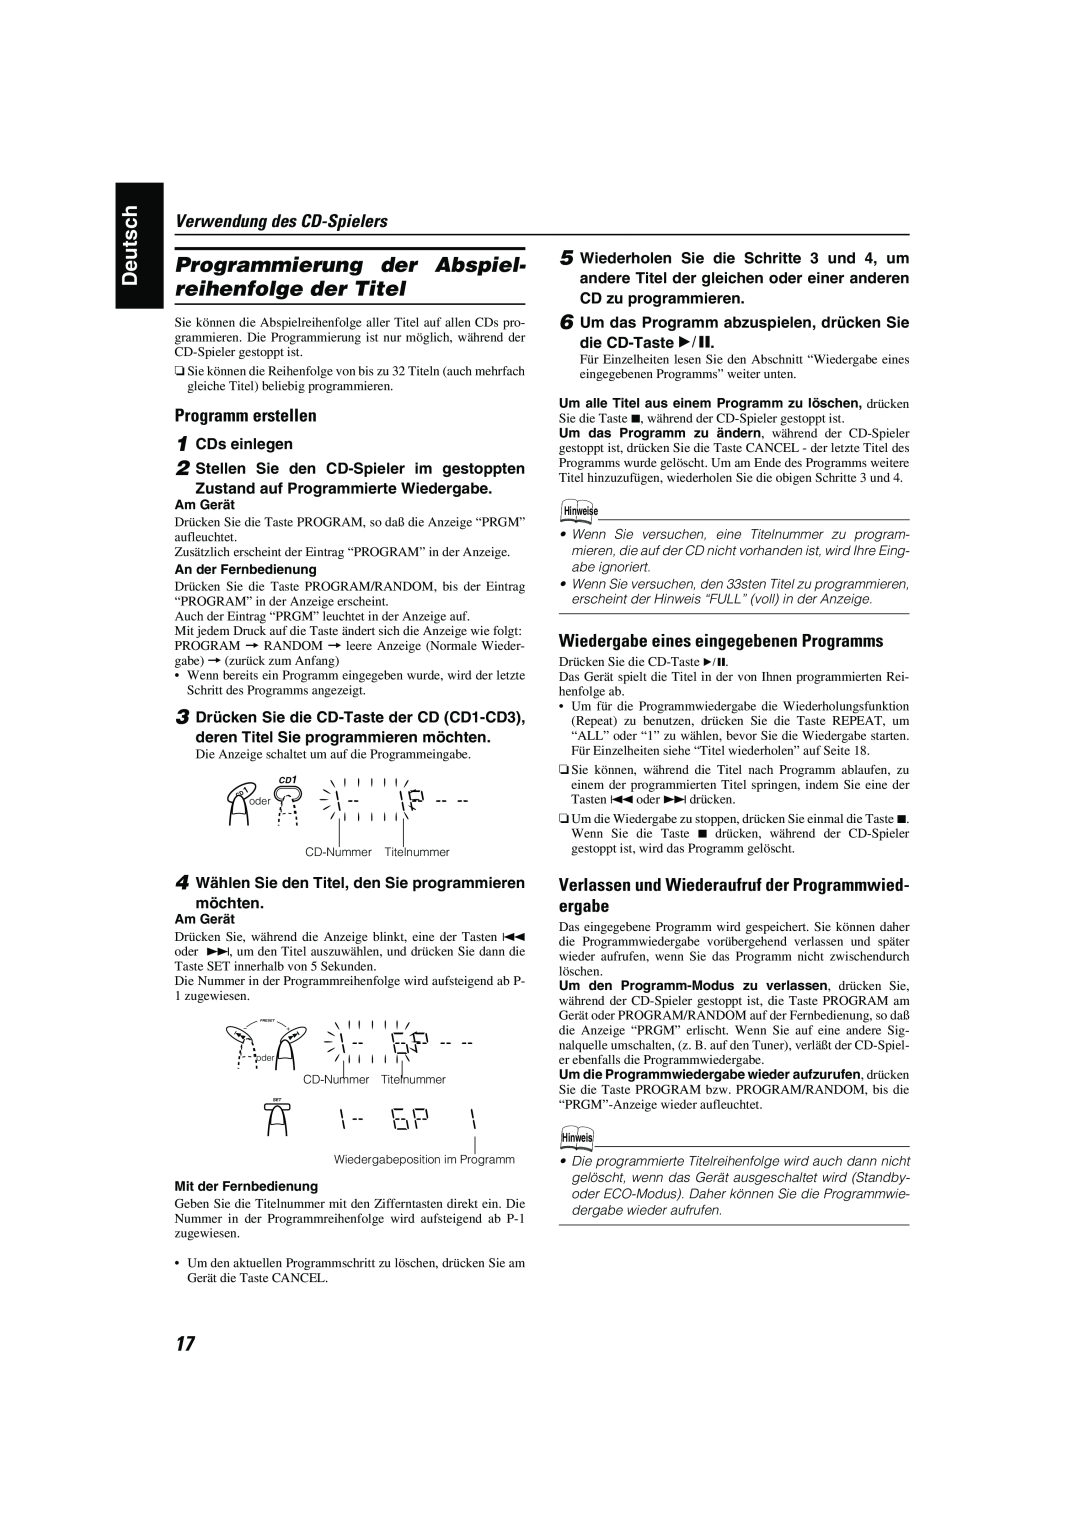 JVC CA-MXK10R manual Programmierung der Abspiel- reihenfolge der Titel, Wiedergabe eines eingegebenen Programms, Deutsch 